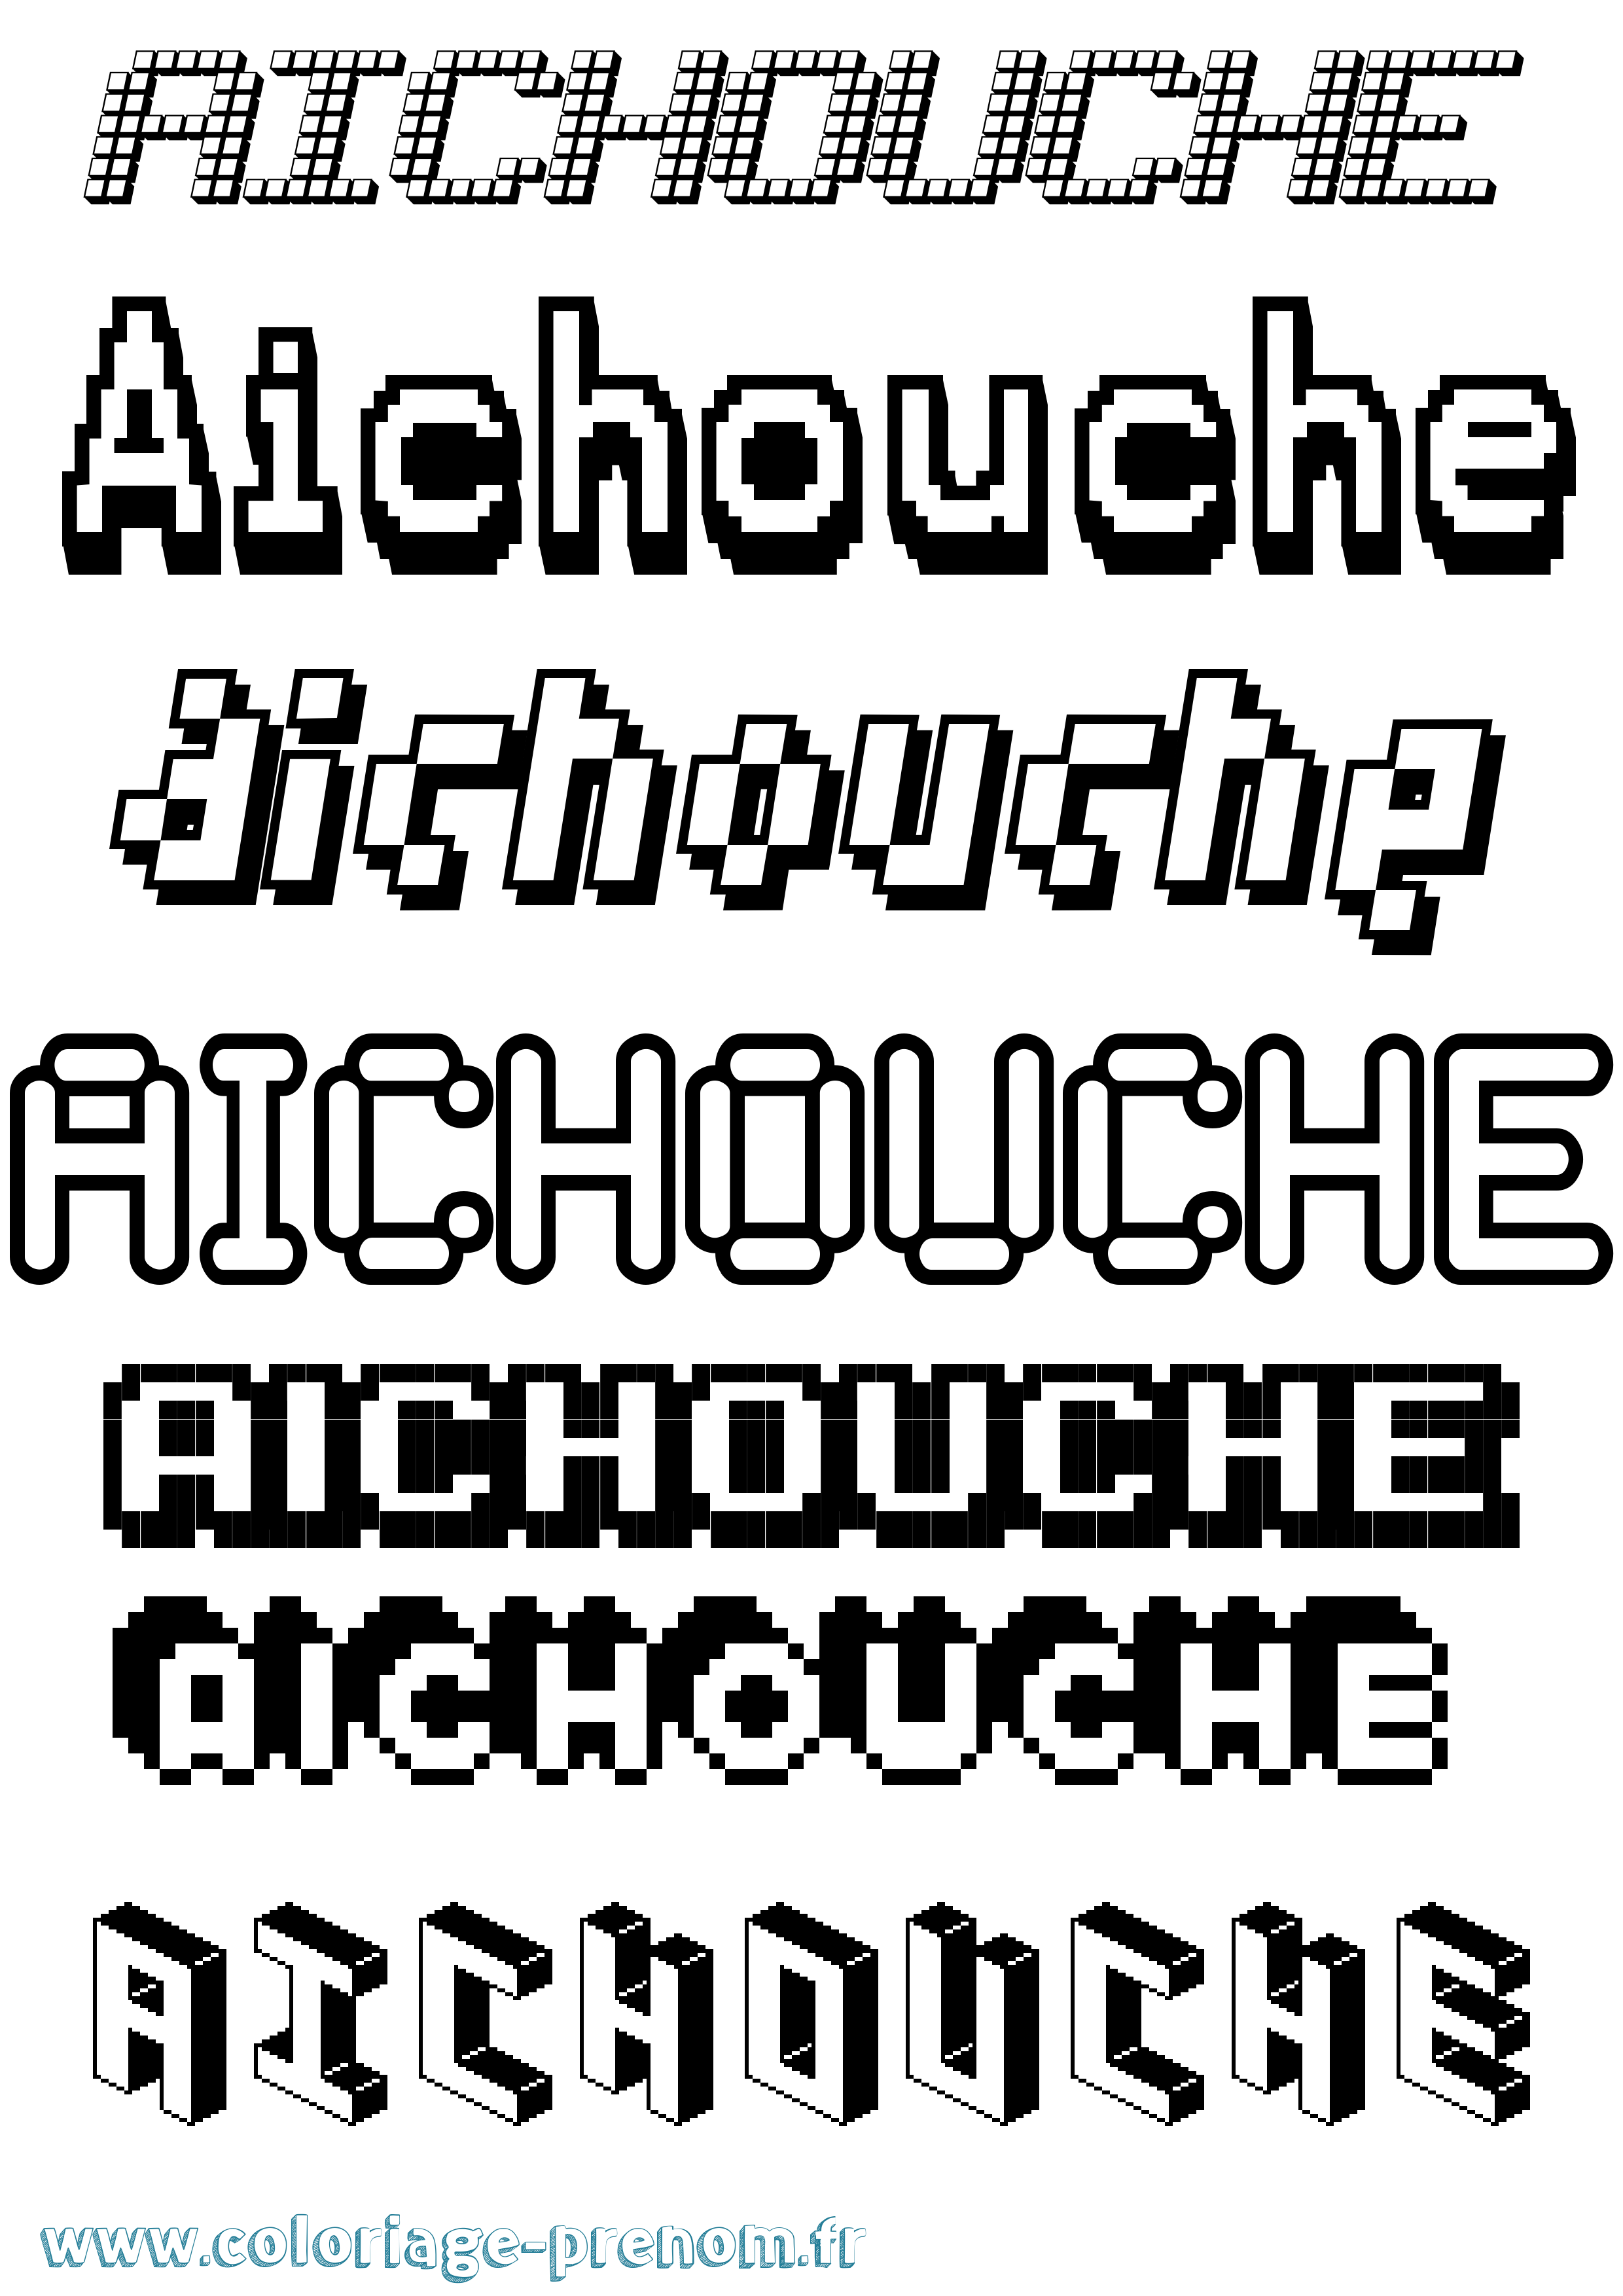 Coloriage prénom Aichouche Pixel